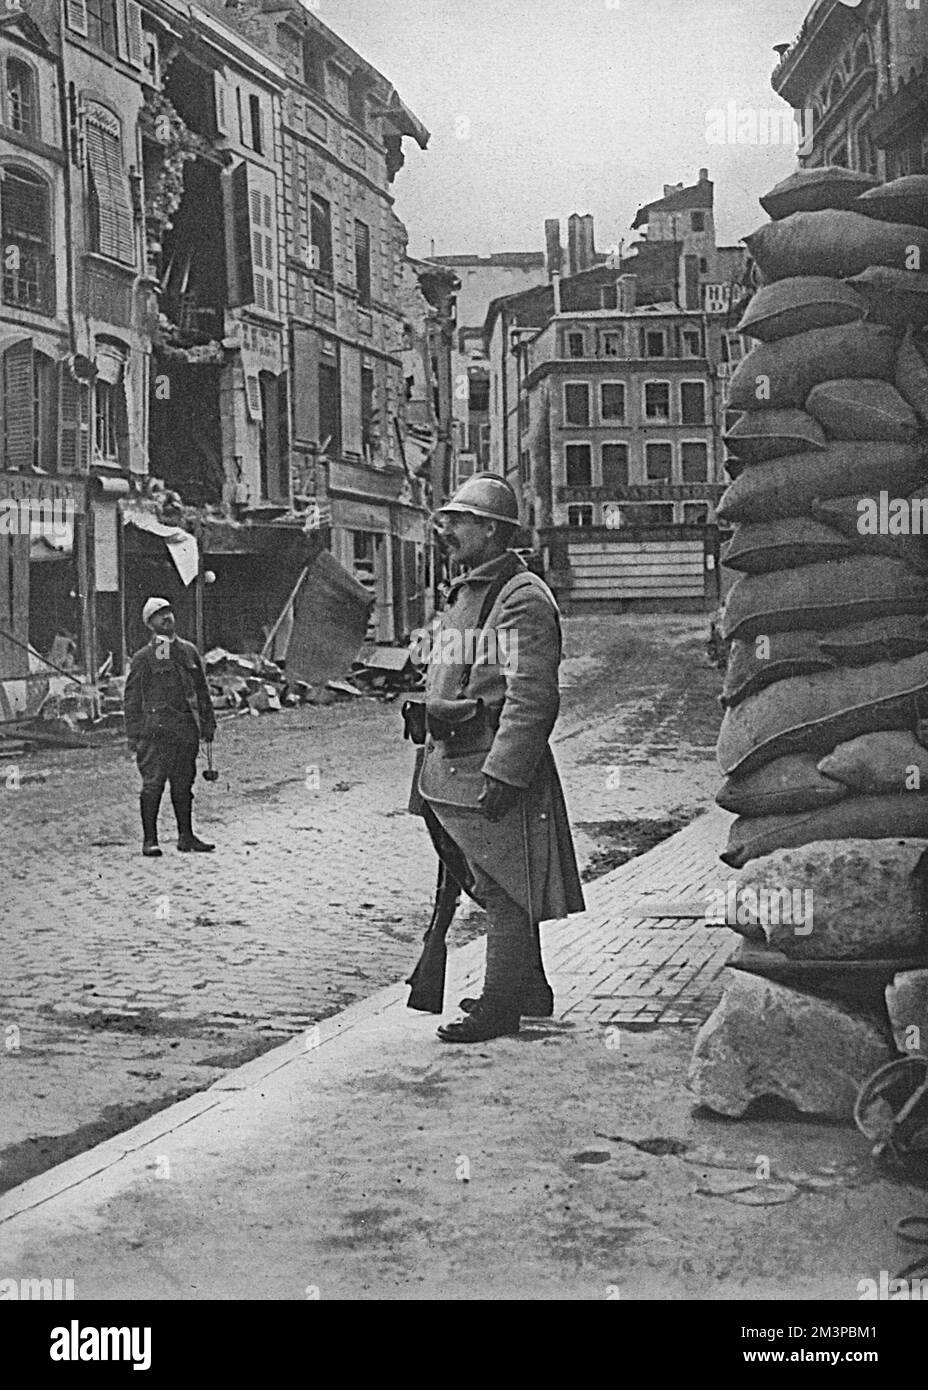 Erscheinen der Stadt Verdun nach einem schweren Bombenangriff durch deutsche Waffen im Jahr 1916, um französische Positionen zu erzwingen. Die Stadt wurde von Zivilisten evakuiert, verlassen von allen außer der Garnison von Soldaten und Feuerwehrmännern. Wie man sehen kann, wurden viele der Gebäude an ihrer Basis mit Sandsäcken übersät. Datum: 1916 Stockfoto